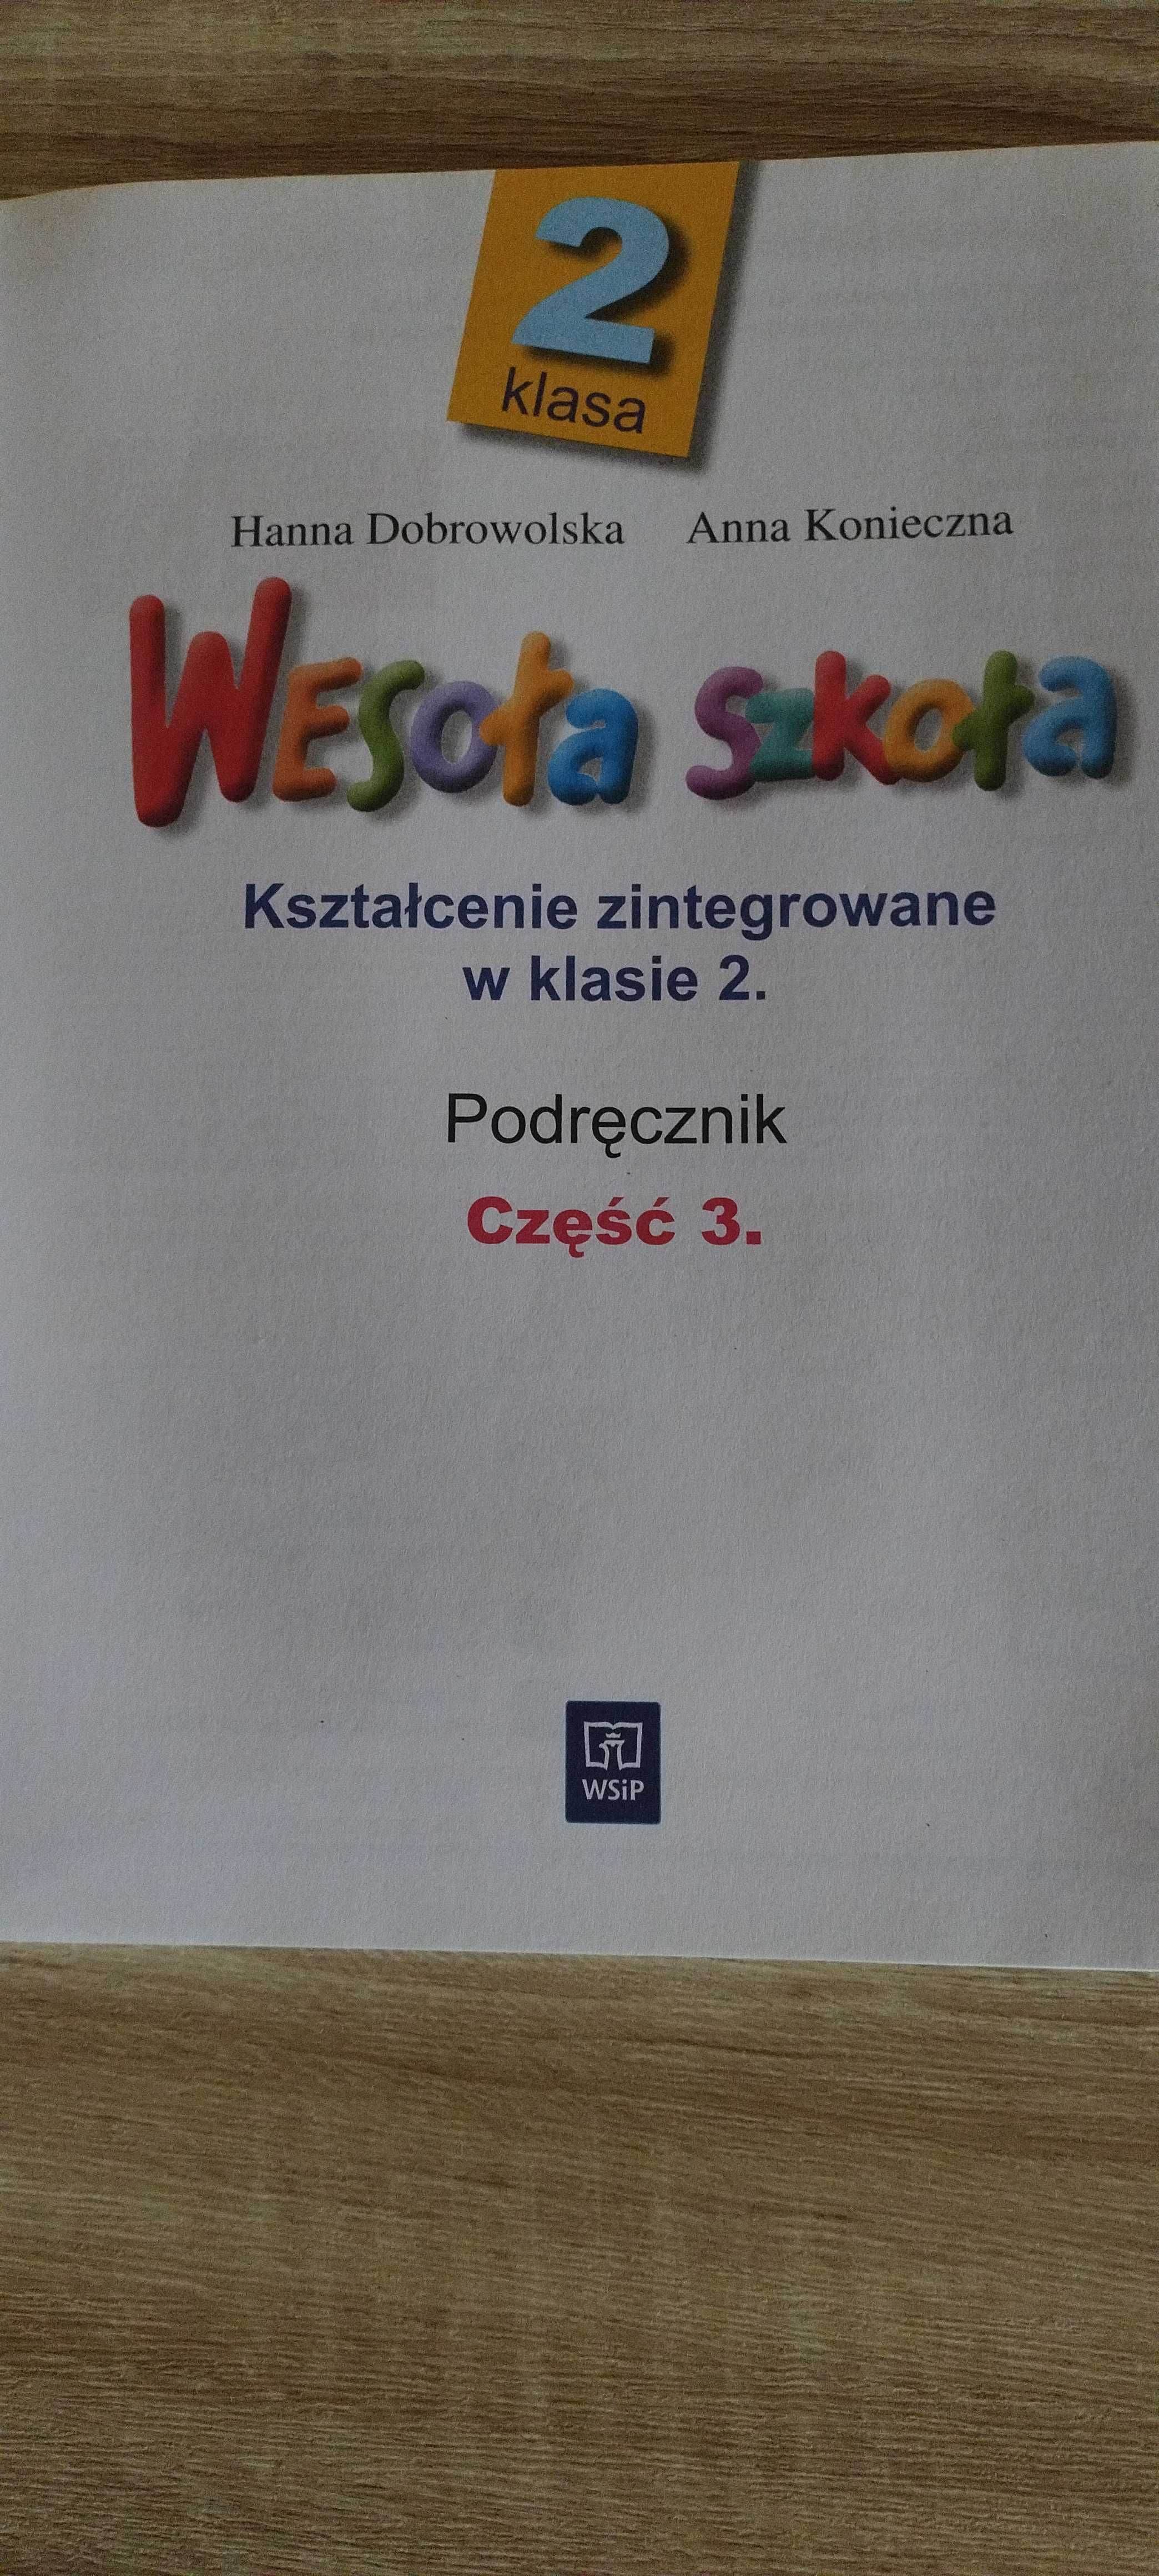 Wesoła szkoła KLASA 2 .Część 3.